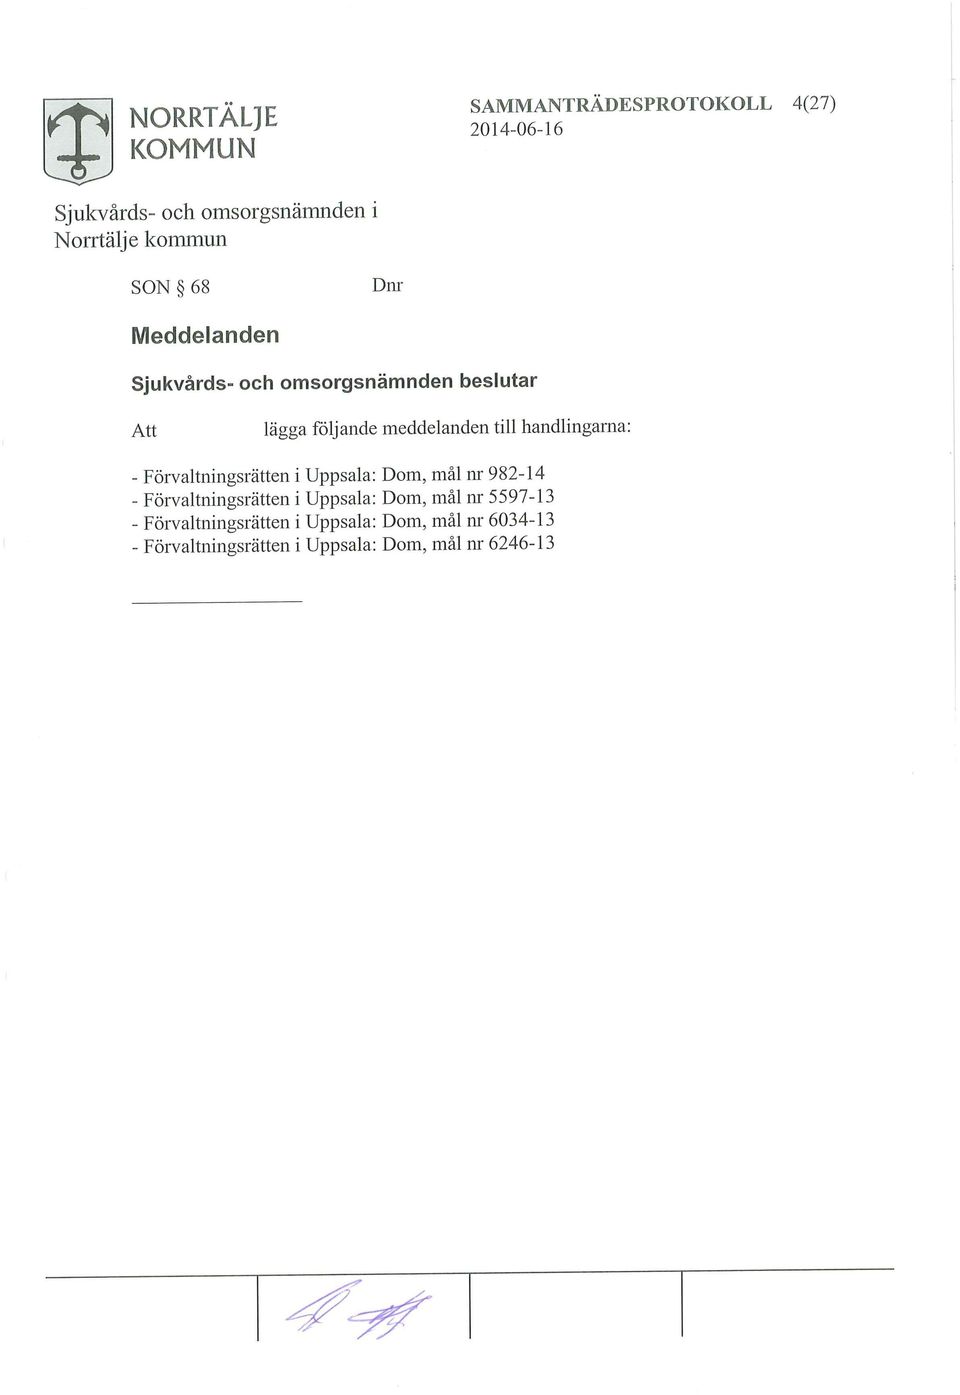 982-14 - Förvaltningsrätten i Uppsala: Dom, mål nr 5597-13 -